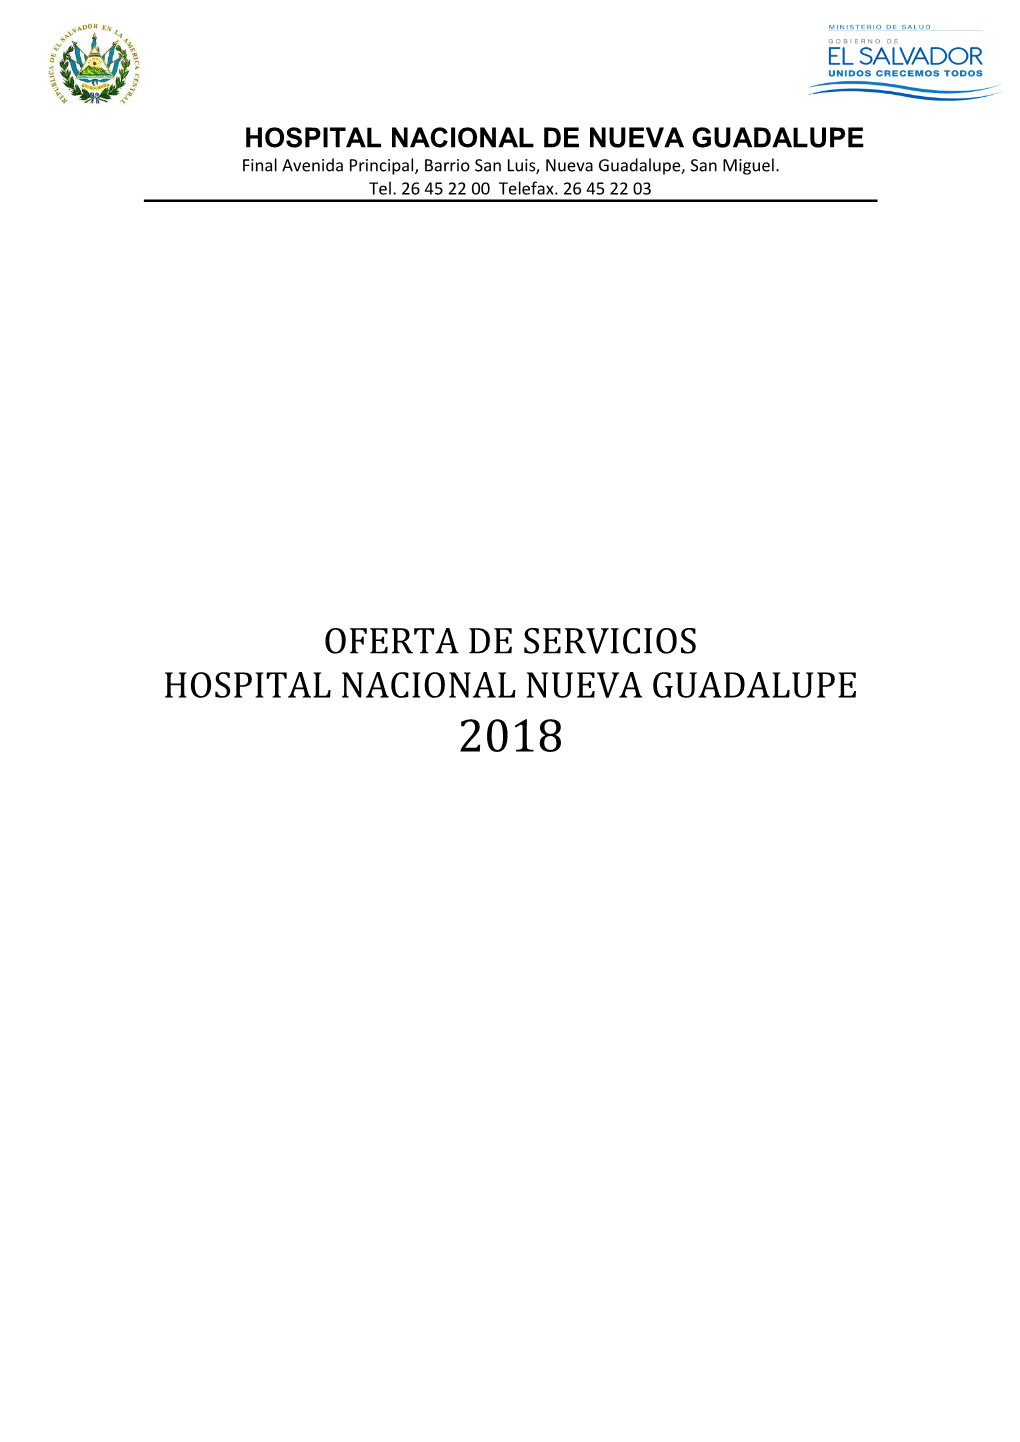 Oferta De Servicios Hospital Nacional Nueva Guadalupe 2018